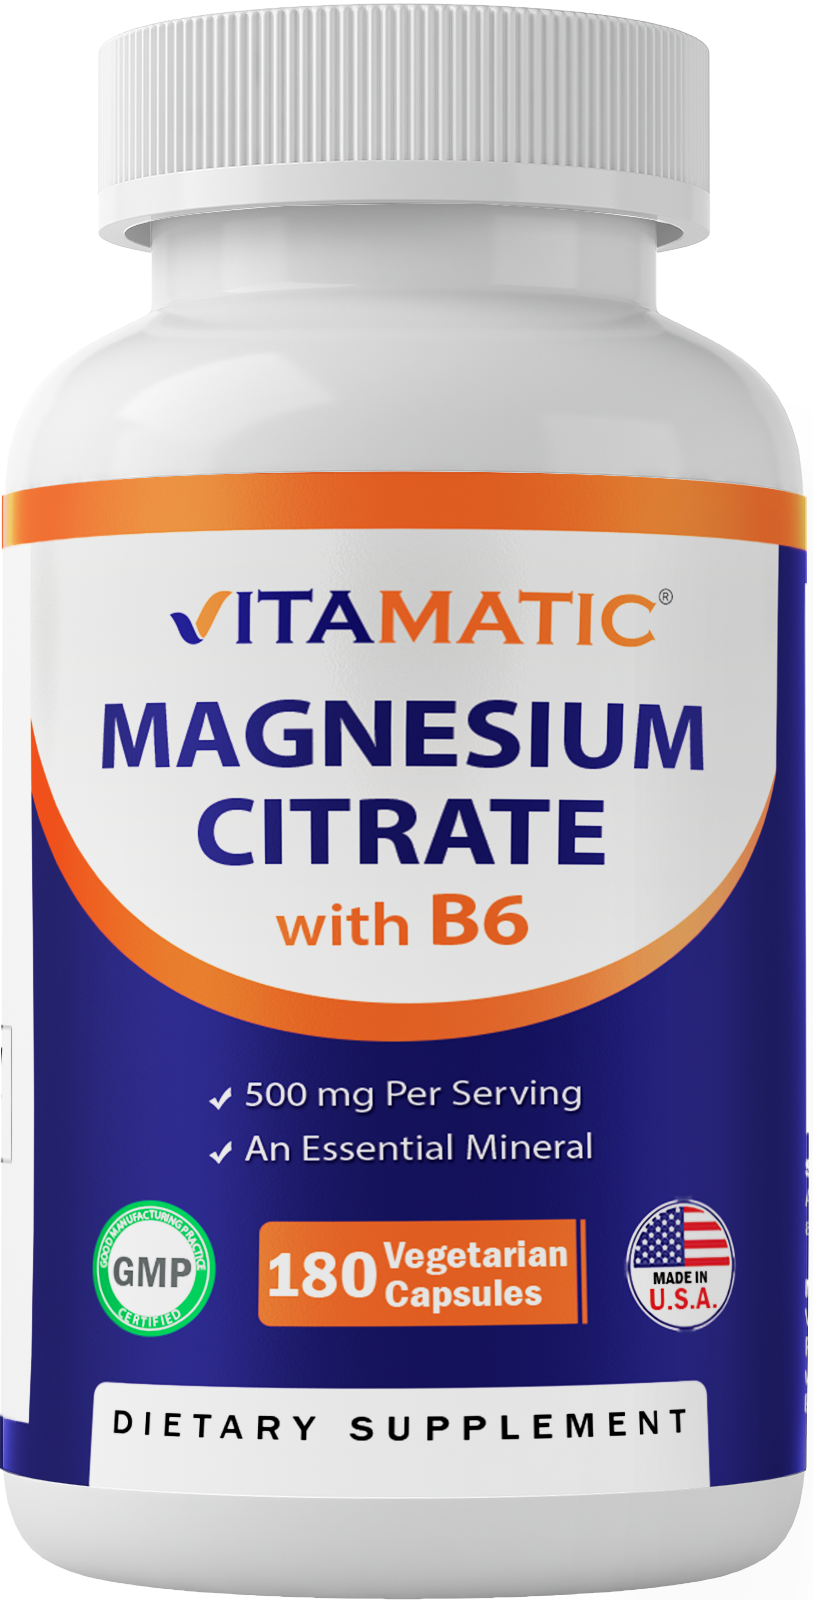 Magnesium Citrate 500mg per Serving 180 Vegetarian Capsules